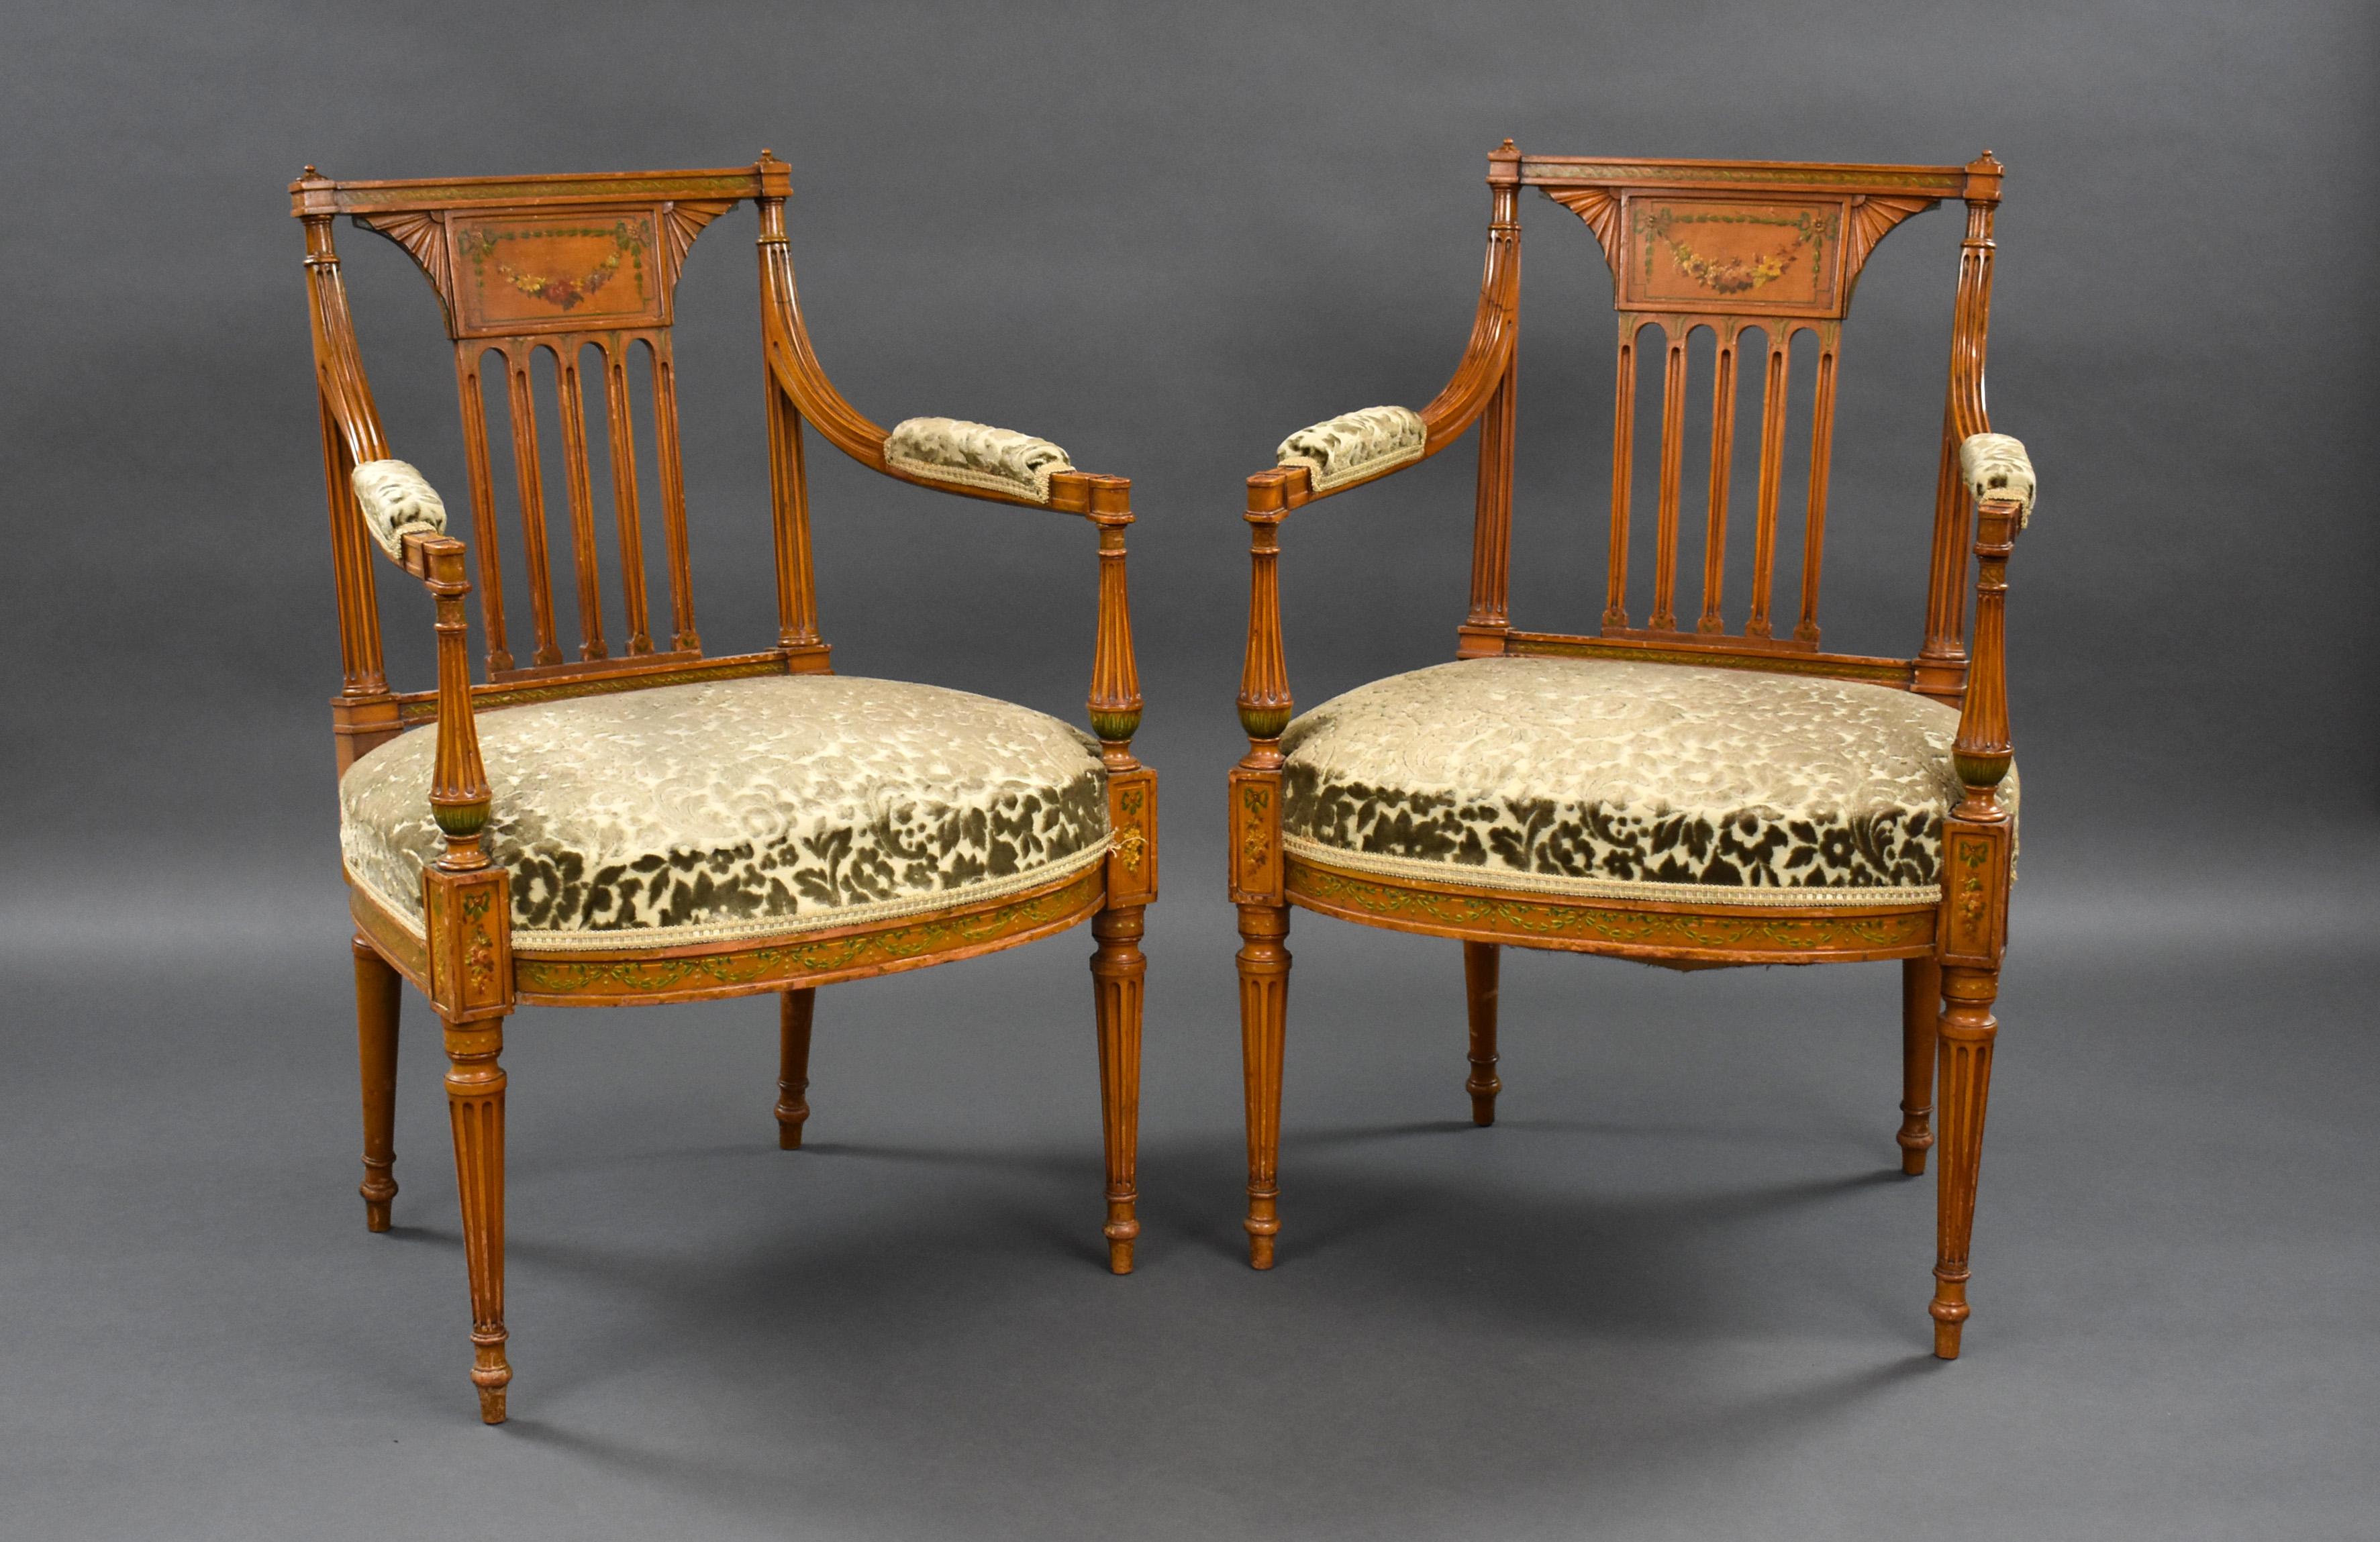 Zum Verkauf steht ein Paar Edwardian Satinwood handbemalte Sessel von guter Qualität. Jeder Stuhl hat eine Rückenlehne und einen gepolsterten Sitz, der auf geriffelten Beinen steht. Beide Stühle sind in einem sehr guten Zustand für ihr Alter.